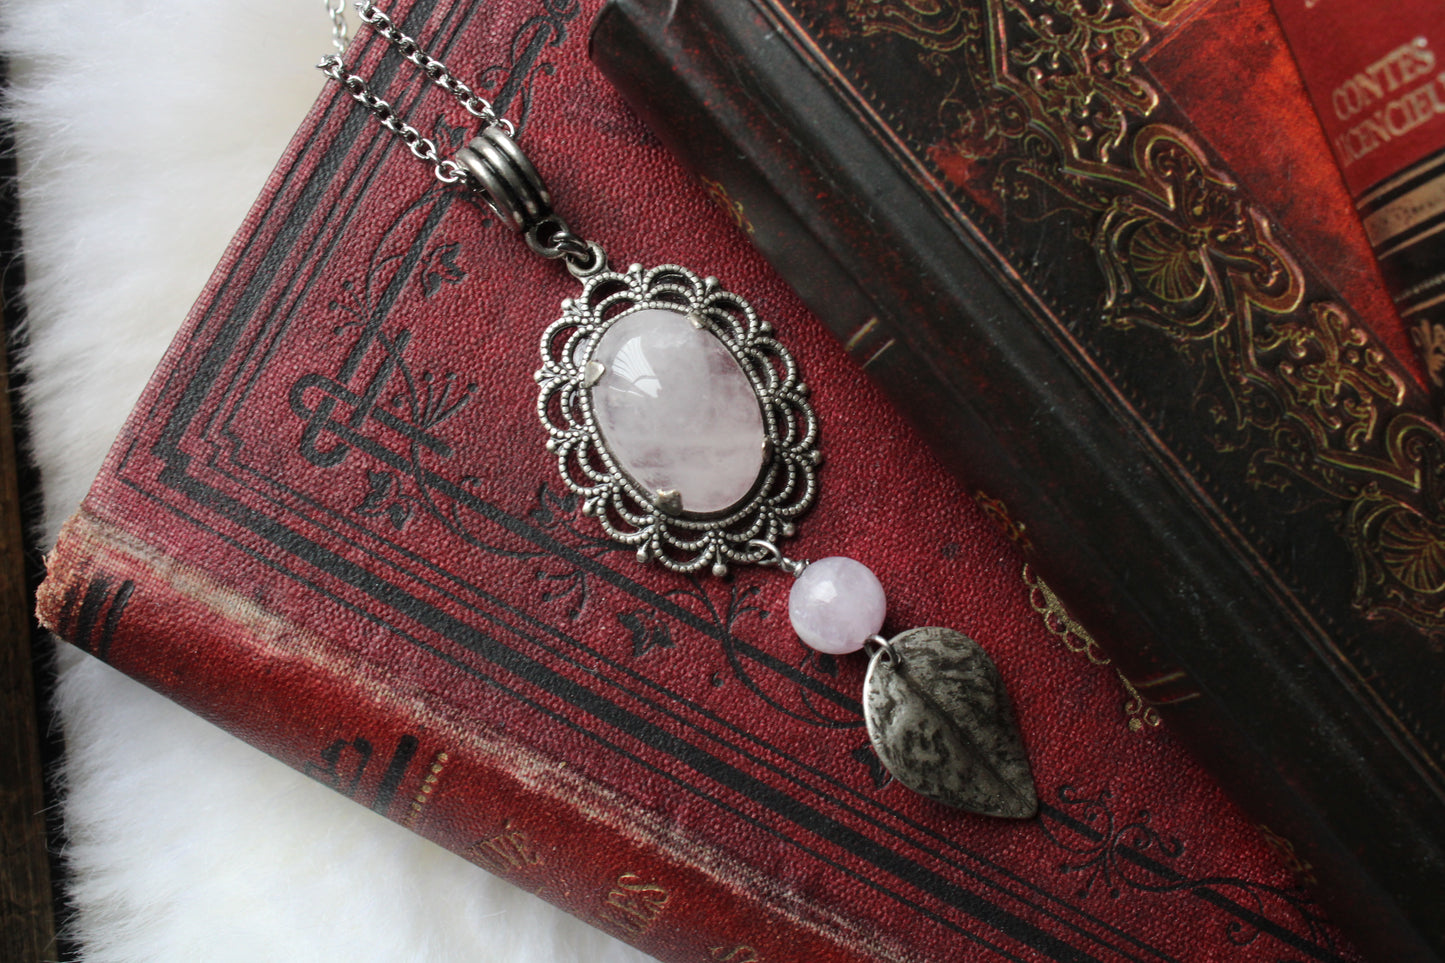 1 collier en quartz rose